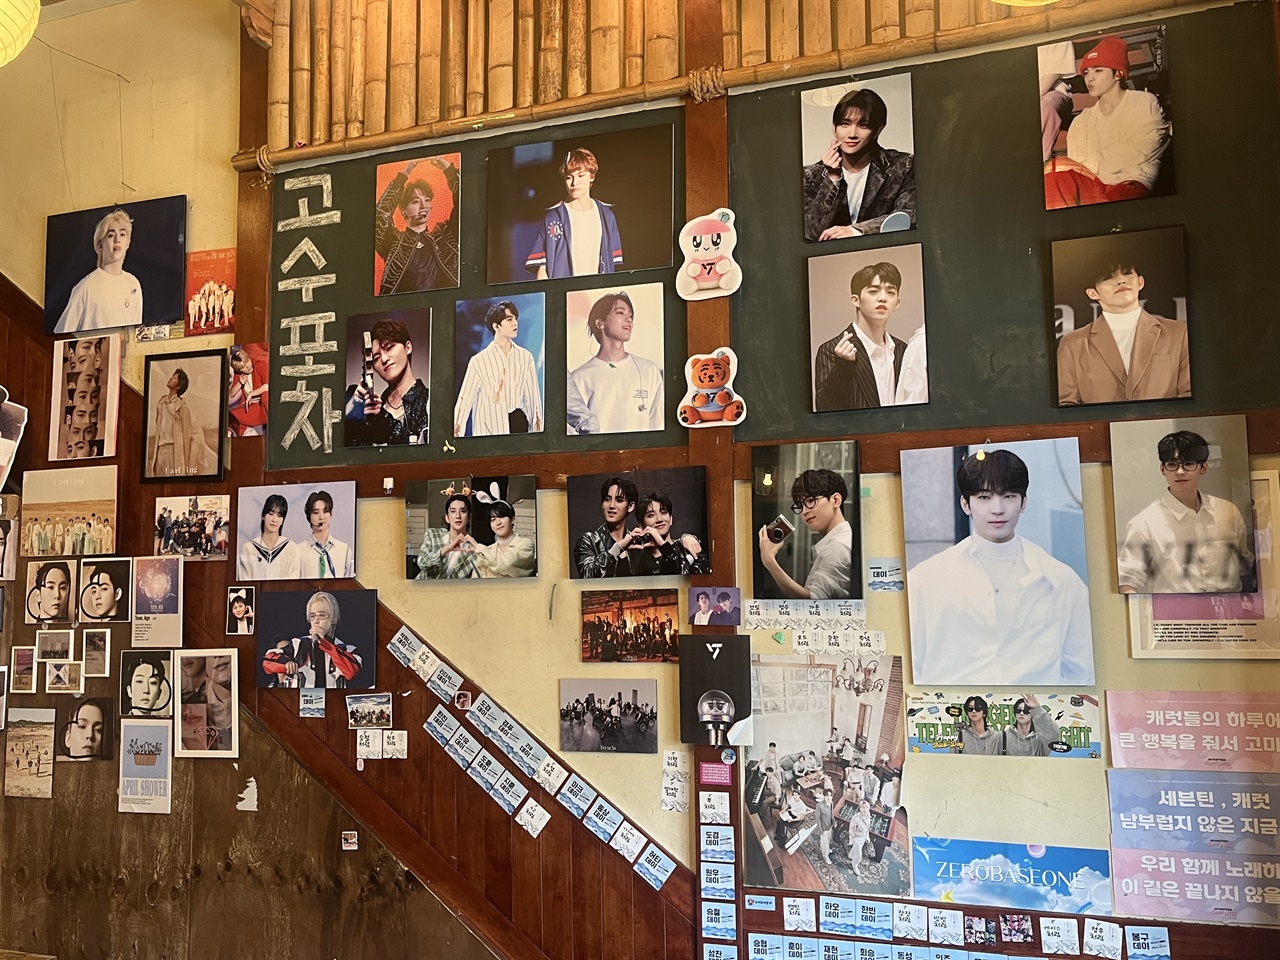 고수포차 벽에 붙은 여러 아이돌의 사진. 손님들과 사장님이 함께 꾸민 공간이다.